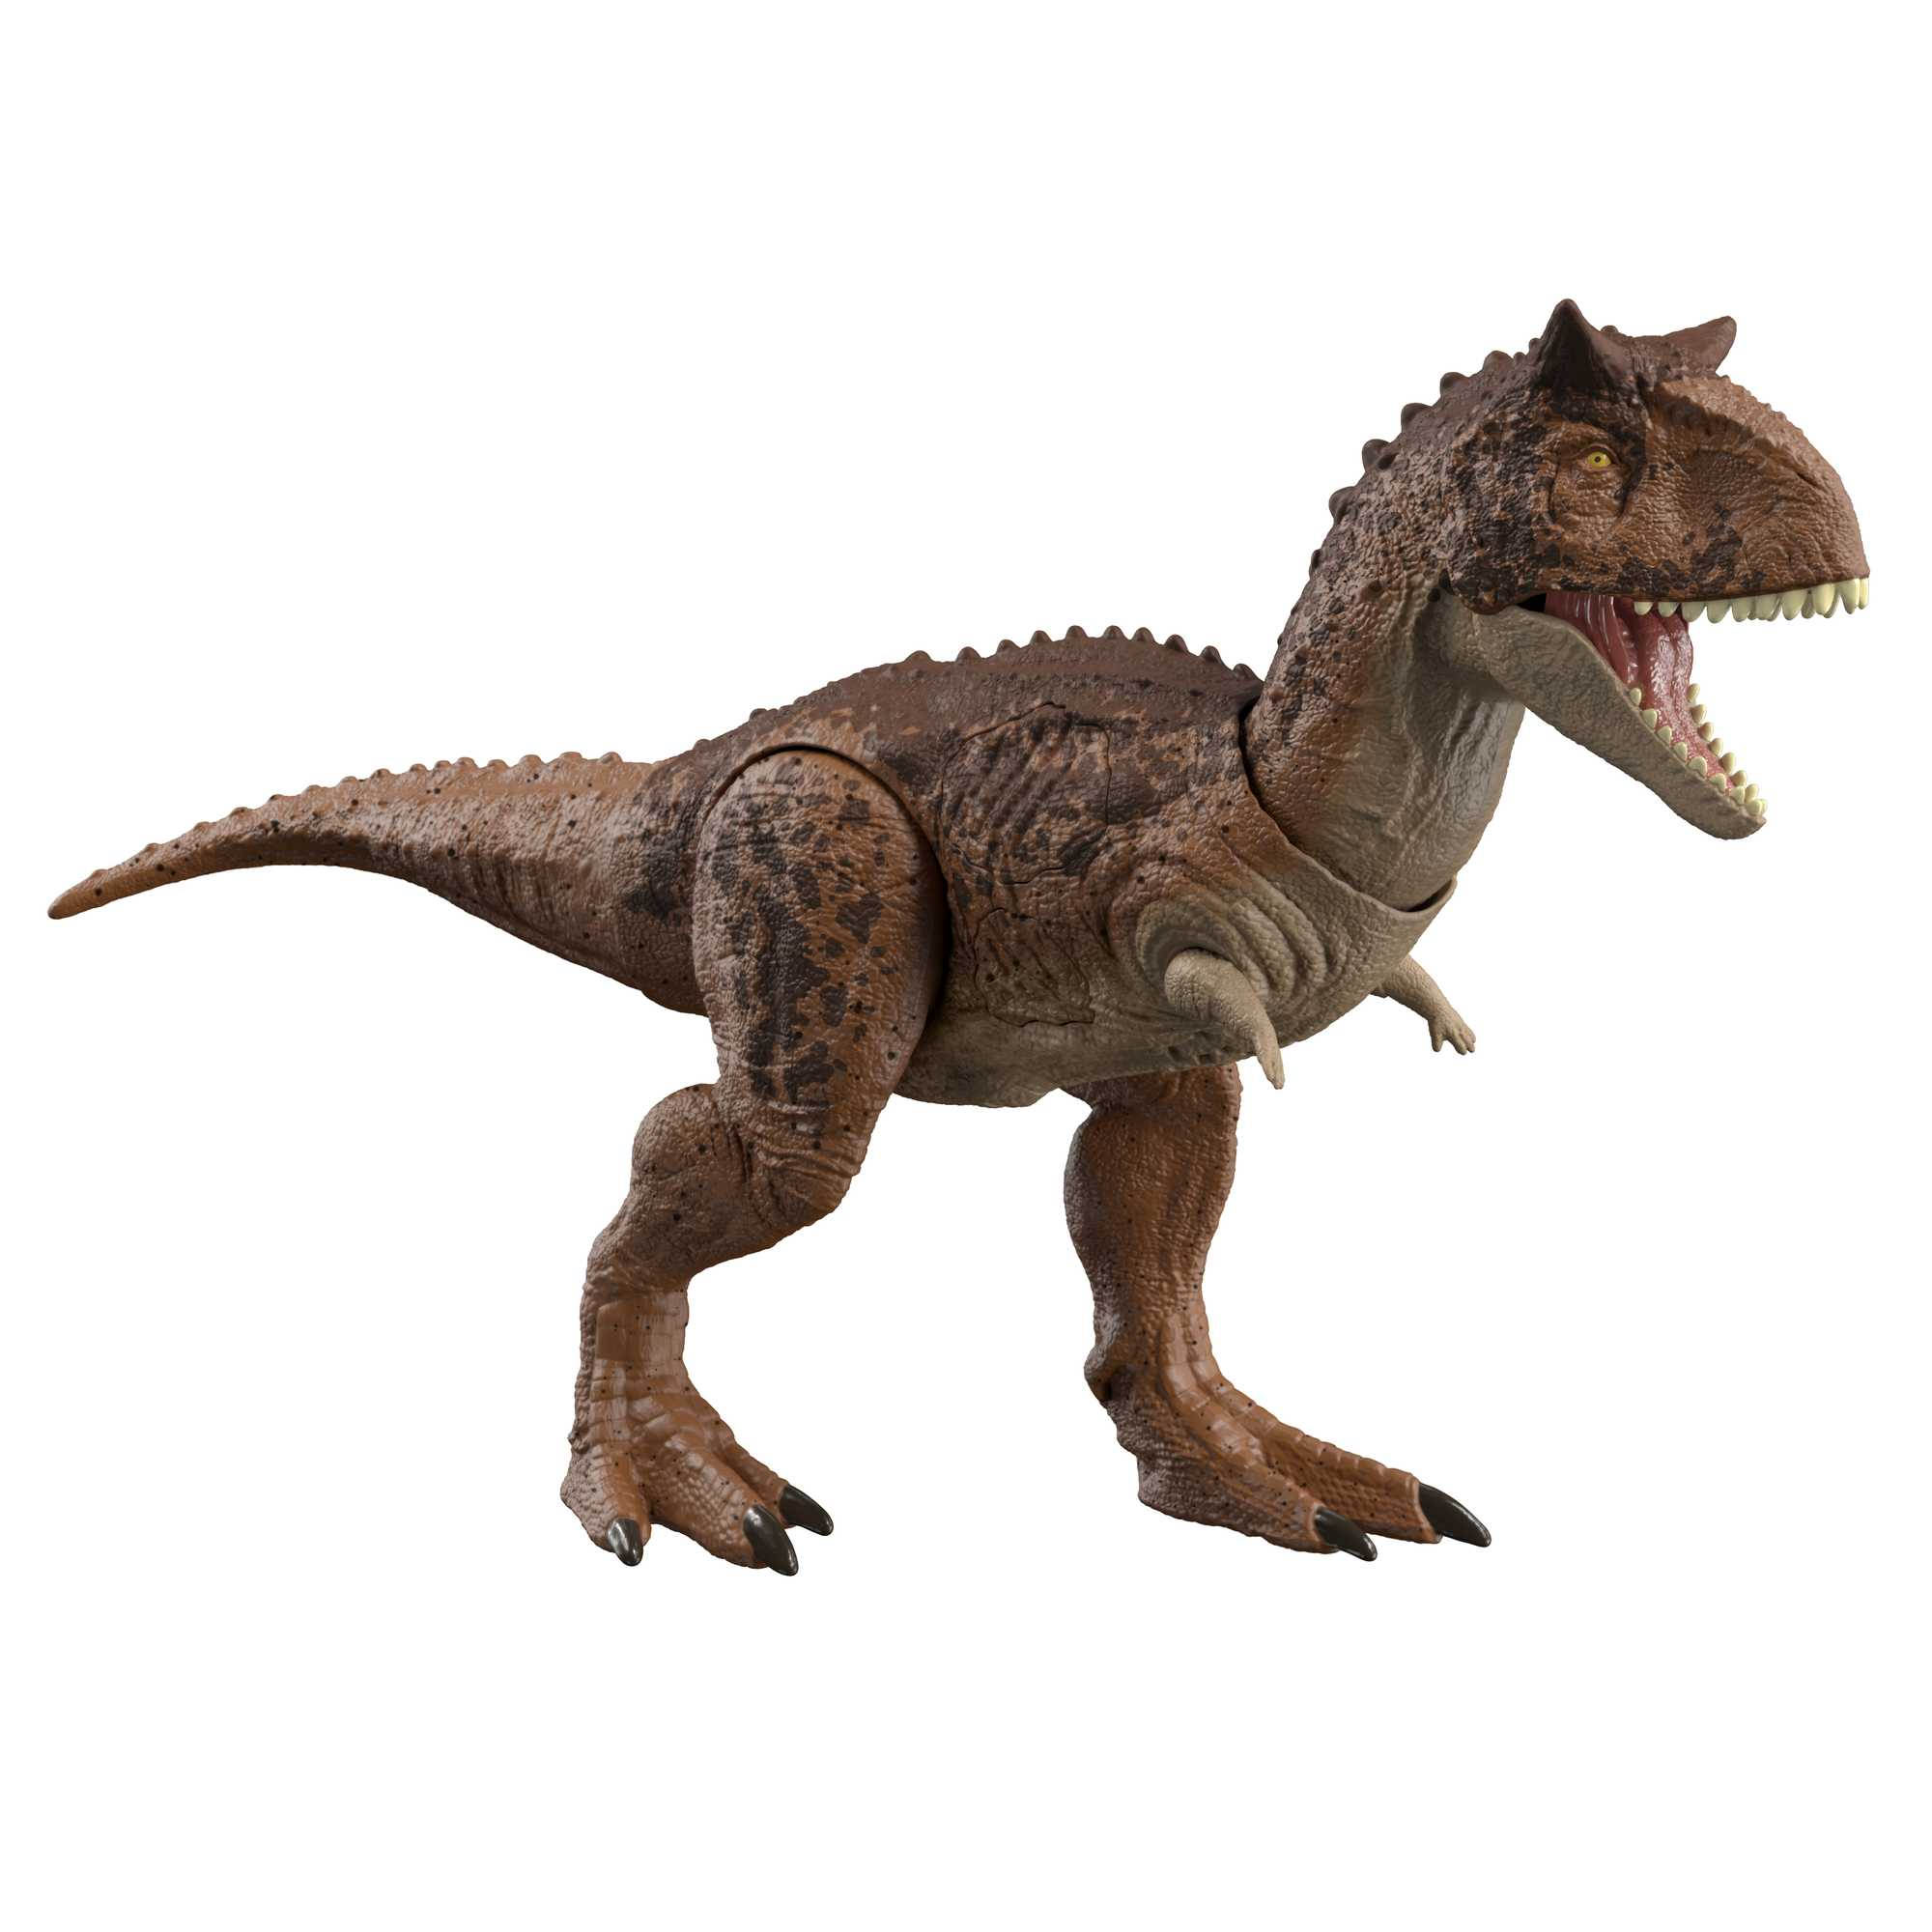 Фигурка динозавра Jurassic World Эпическая Битва Карнотавр, HND19 интерактивная маска динозавра